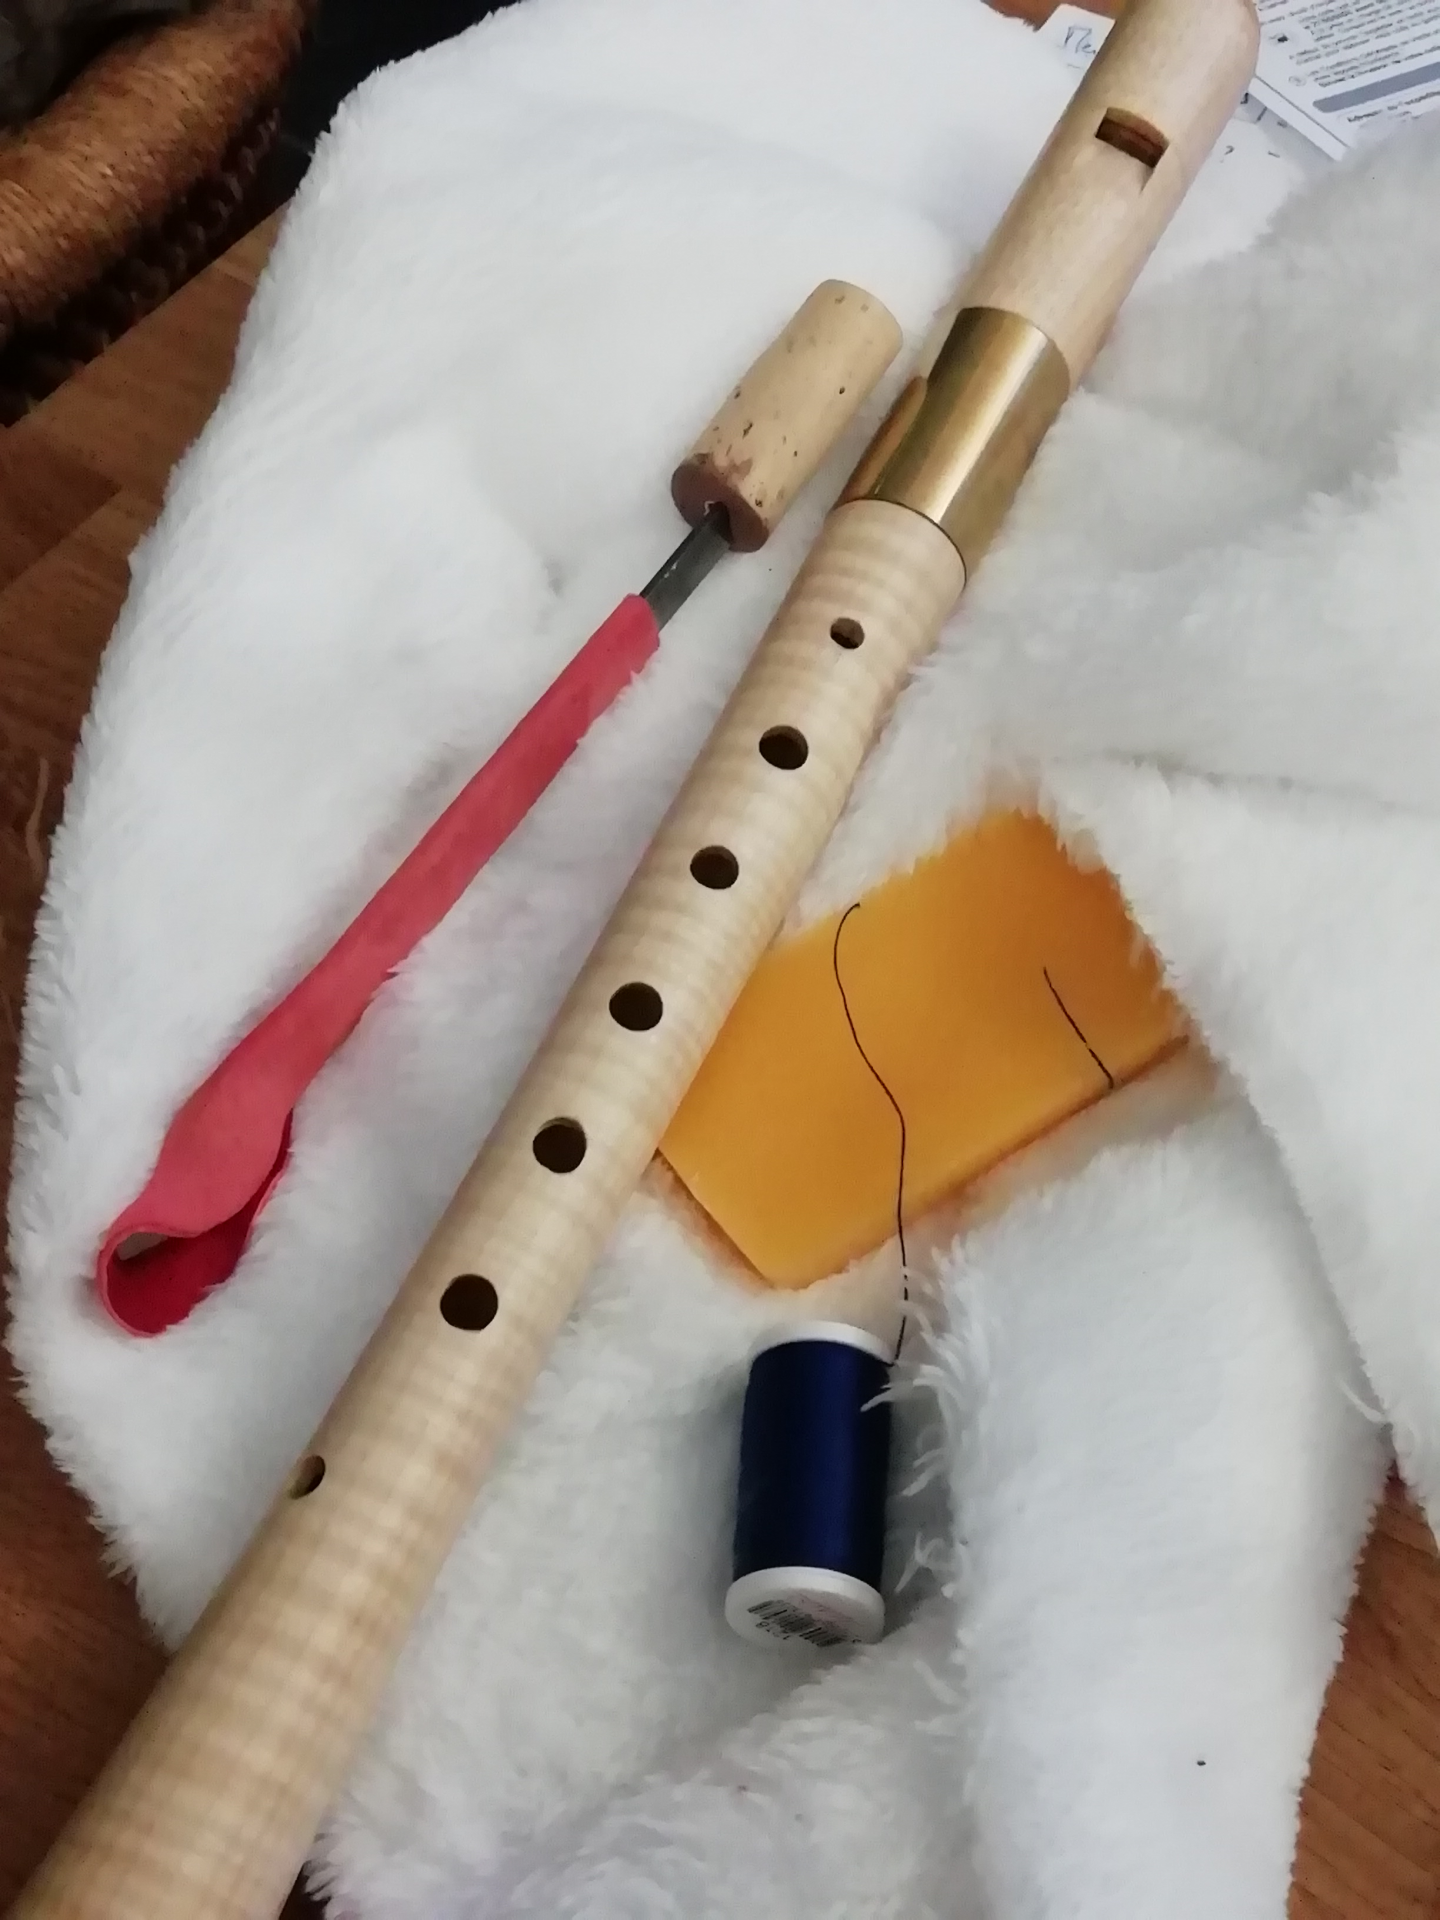 Première flûte: Ganassi alto en érable